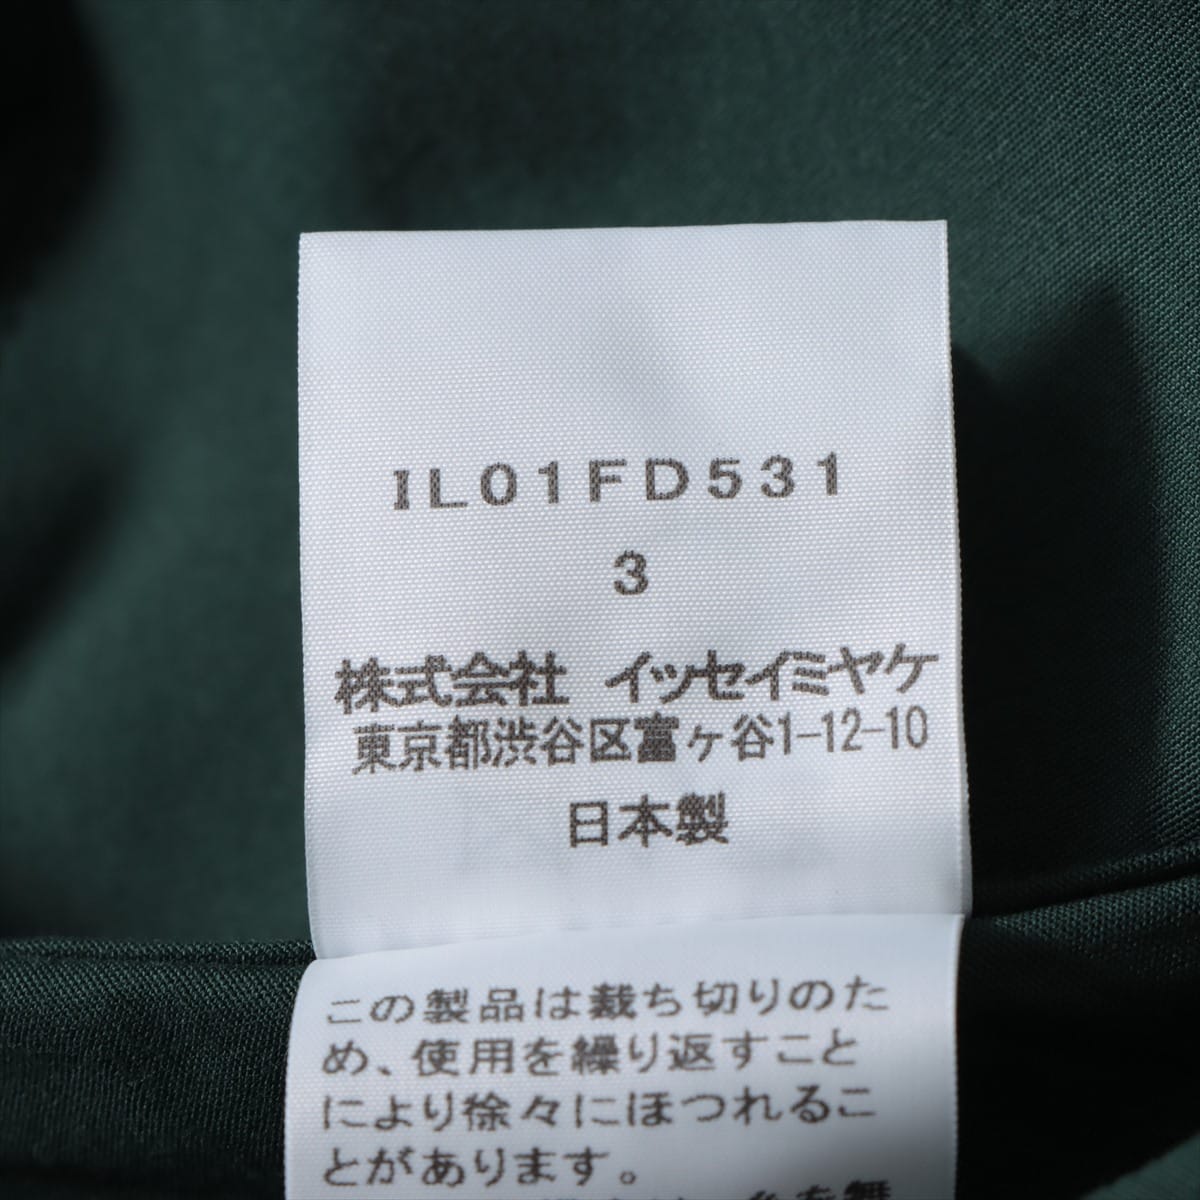 132 5 イッセイミヤケ コットン シャツ 3 レディース ブルー×グリーン  IL01FD531